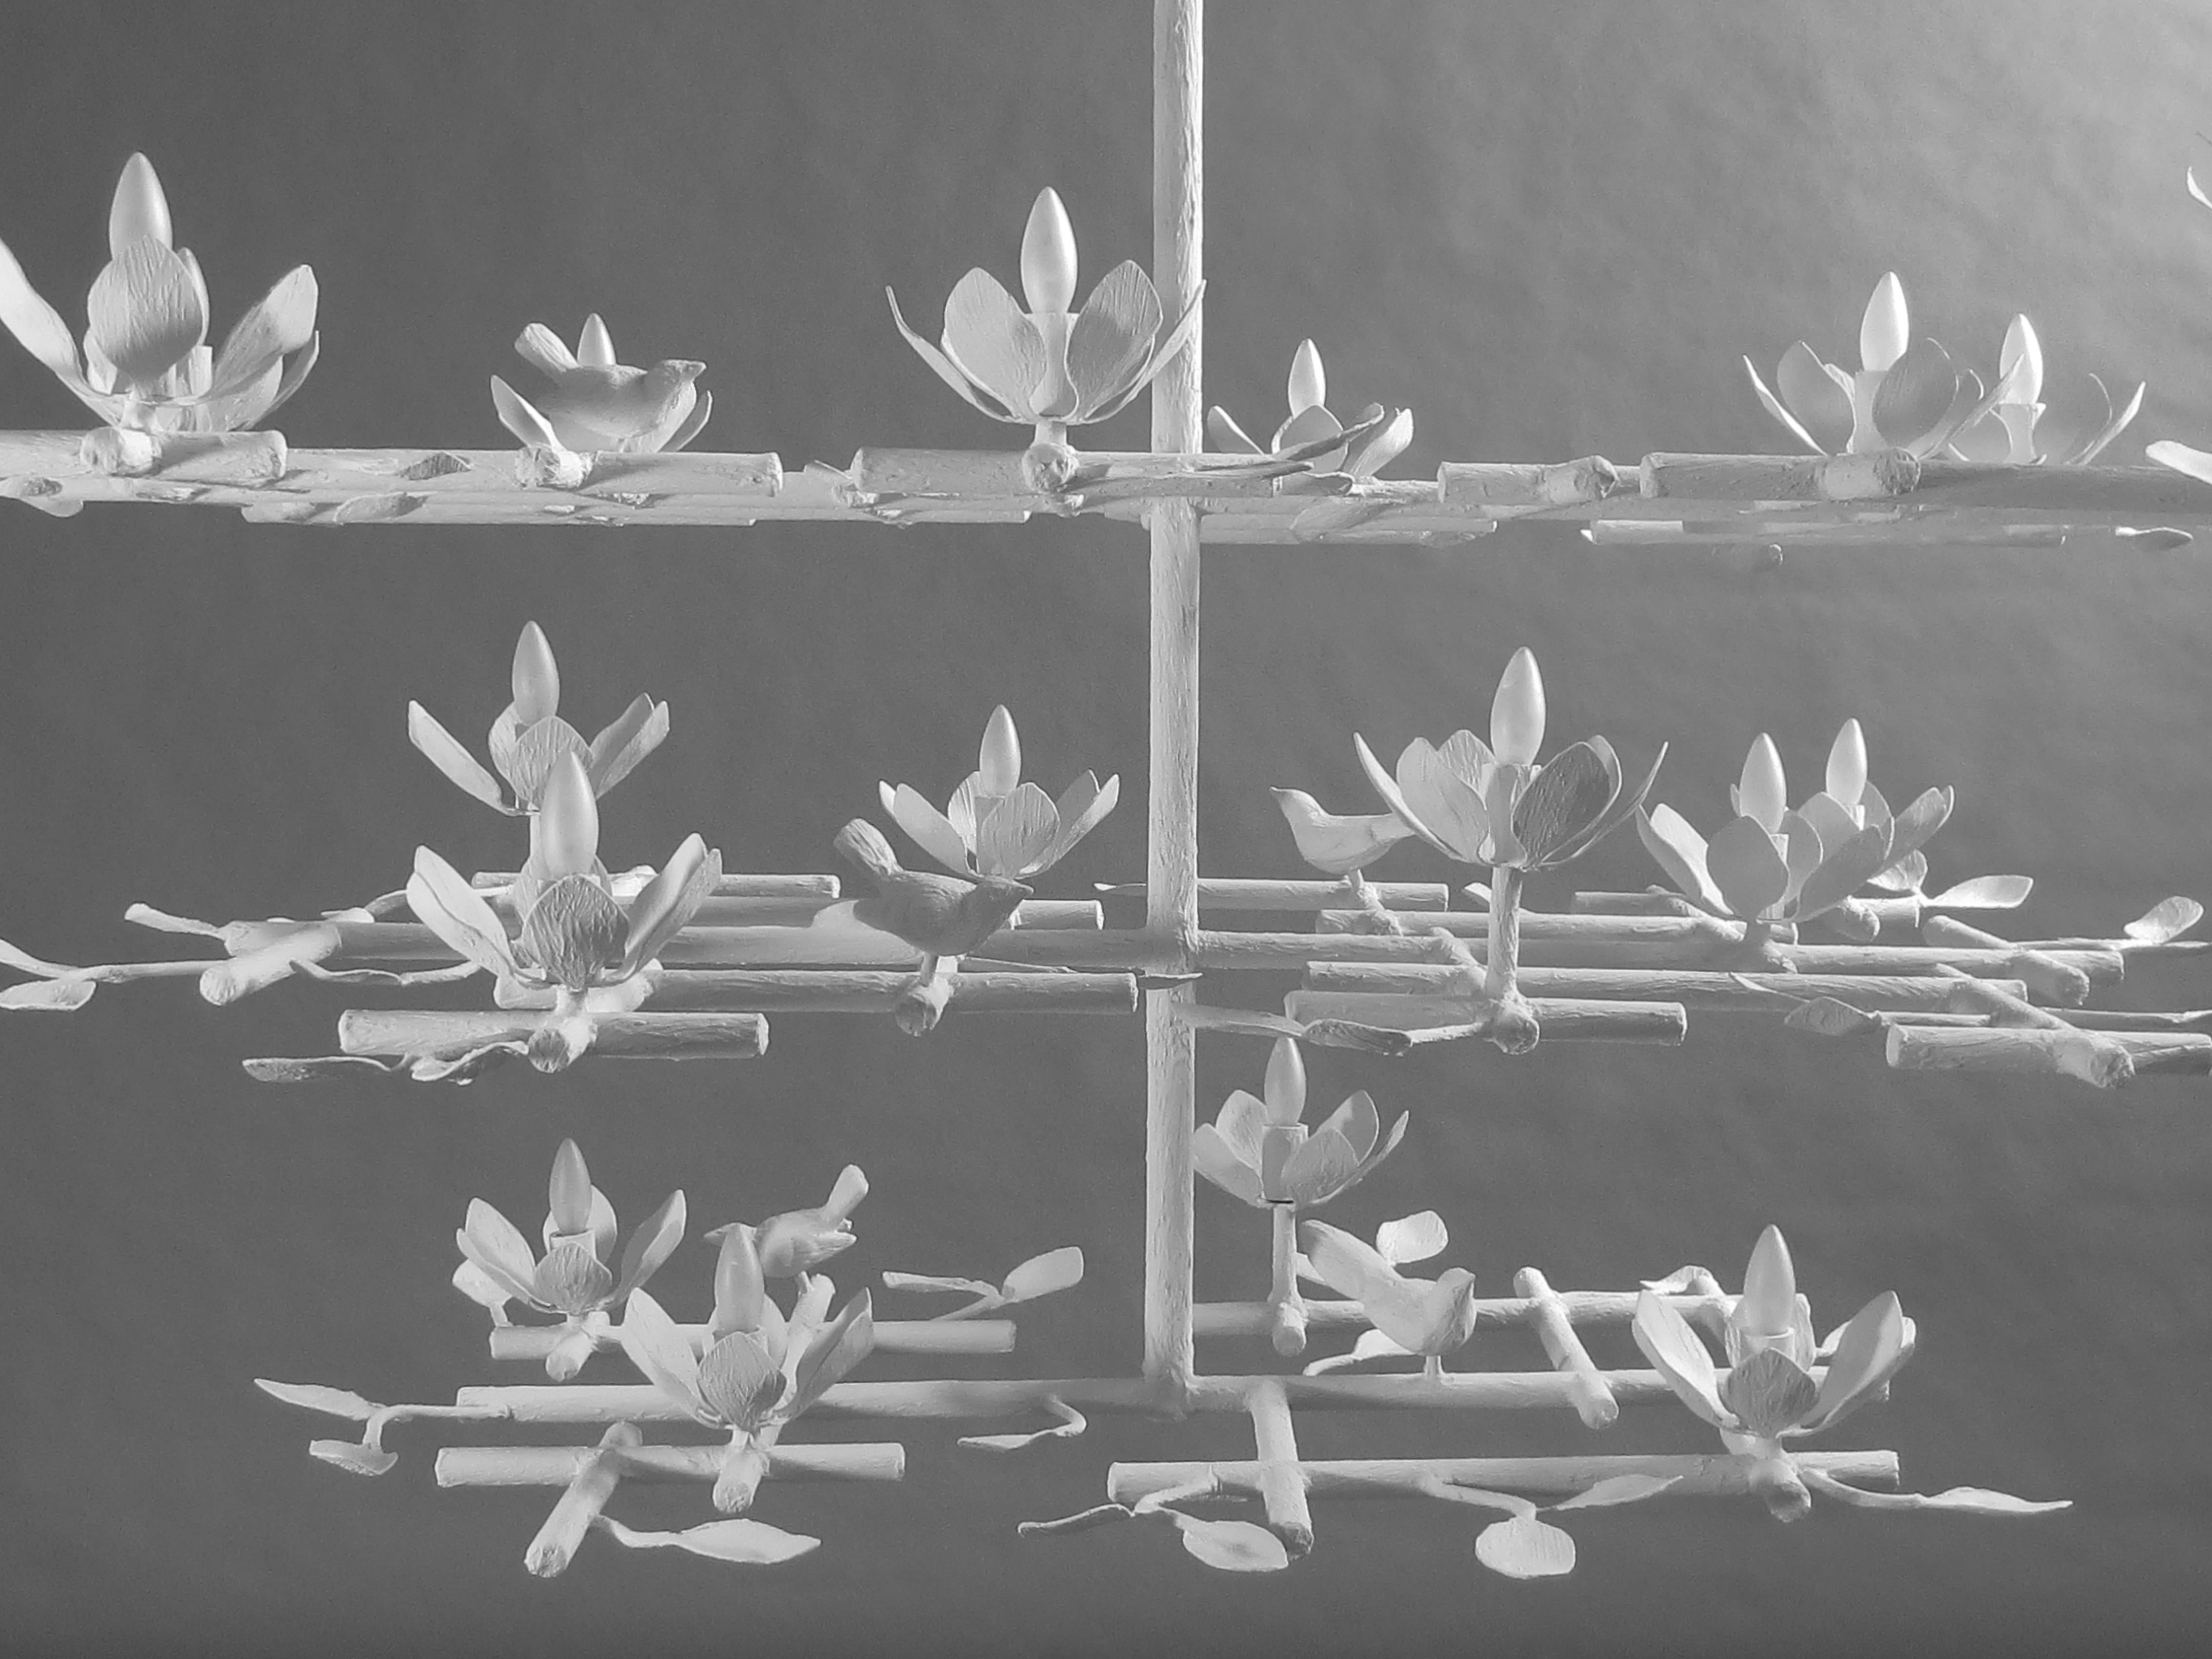 lustre en plâtre de jardin à 3 étages de Tracey Garet d'Apsara Interiors.
Ce lustre de jardin comporte 3 couches et est présenté dans une finition émaillée blanche. Les oiseaux et les fleurs sont détaillés partout. Les 18 fleurs contiennent chacune